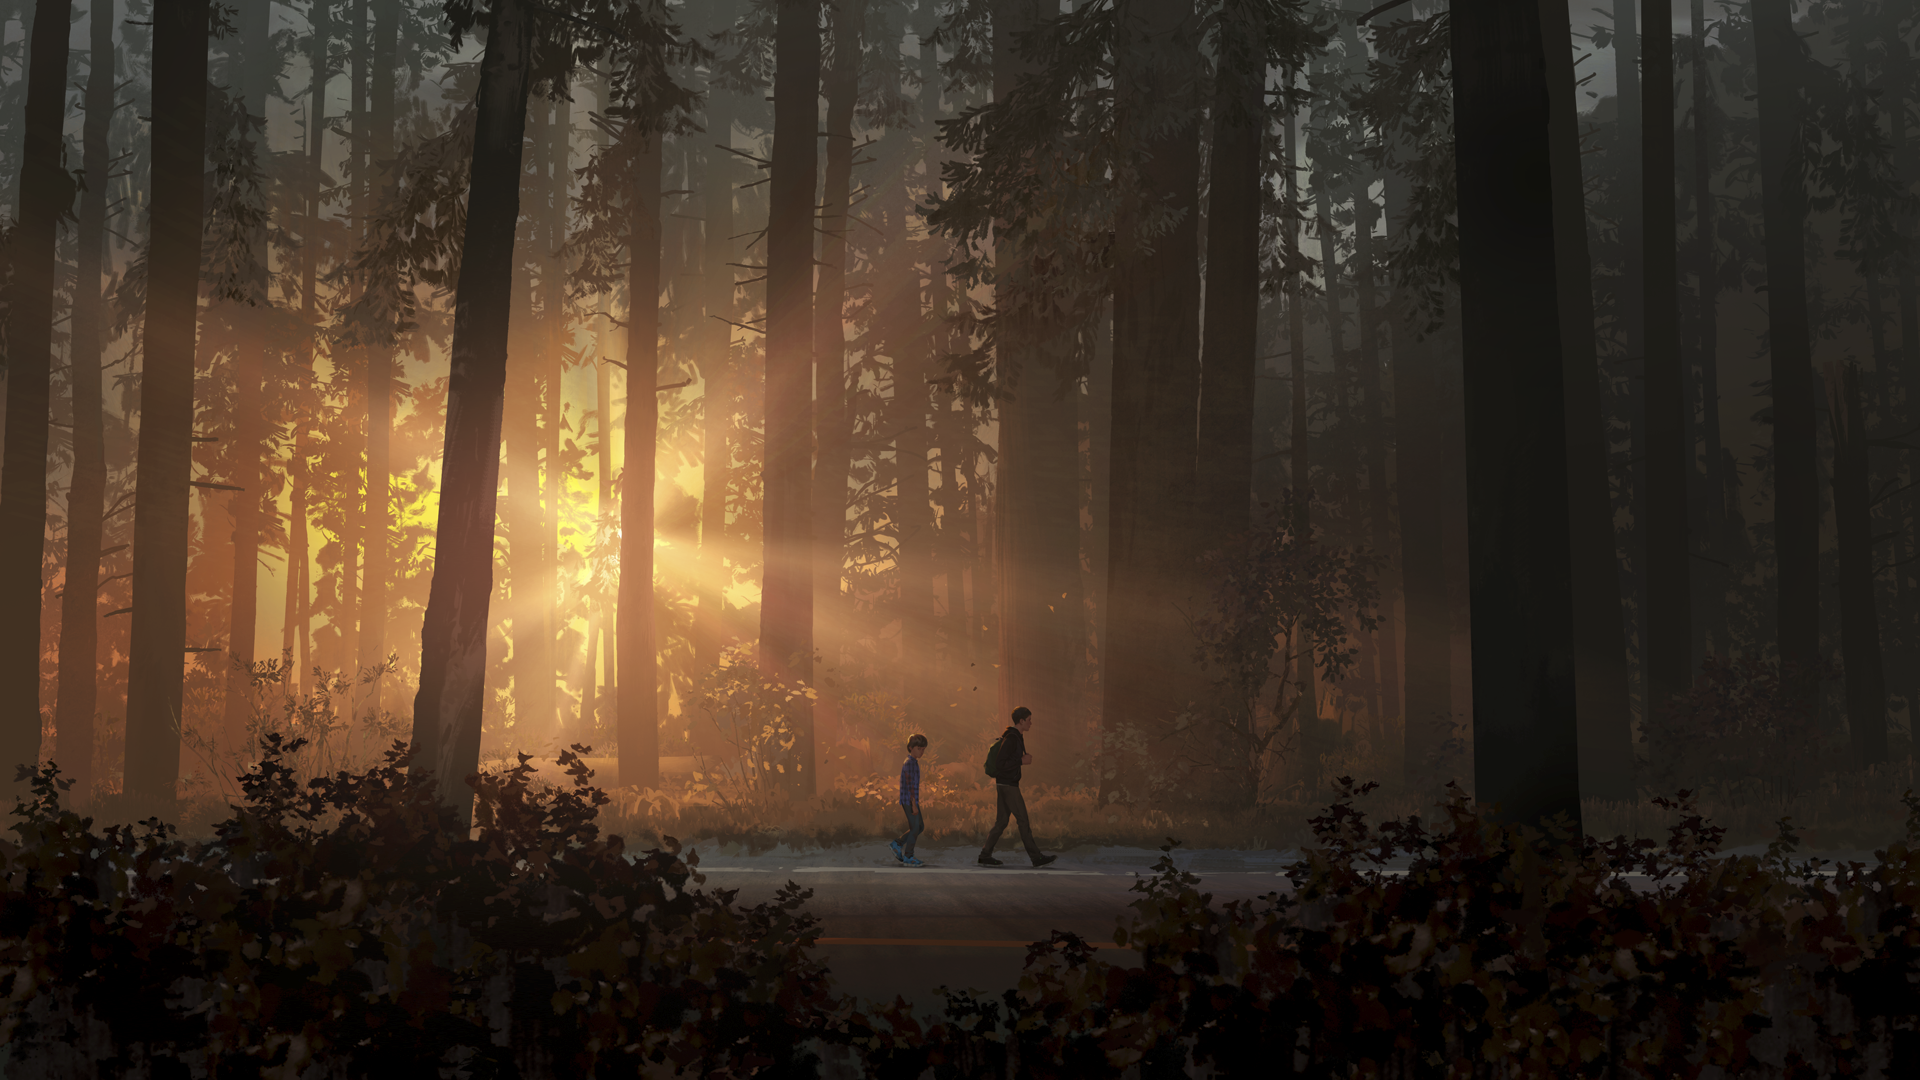 Life Is Strange 2-heldenillustratie - twee jongens lopen op een weg langs zonnestralen die door de bomen schijnen